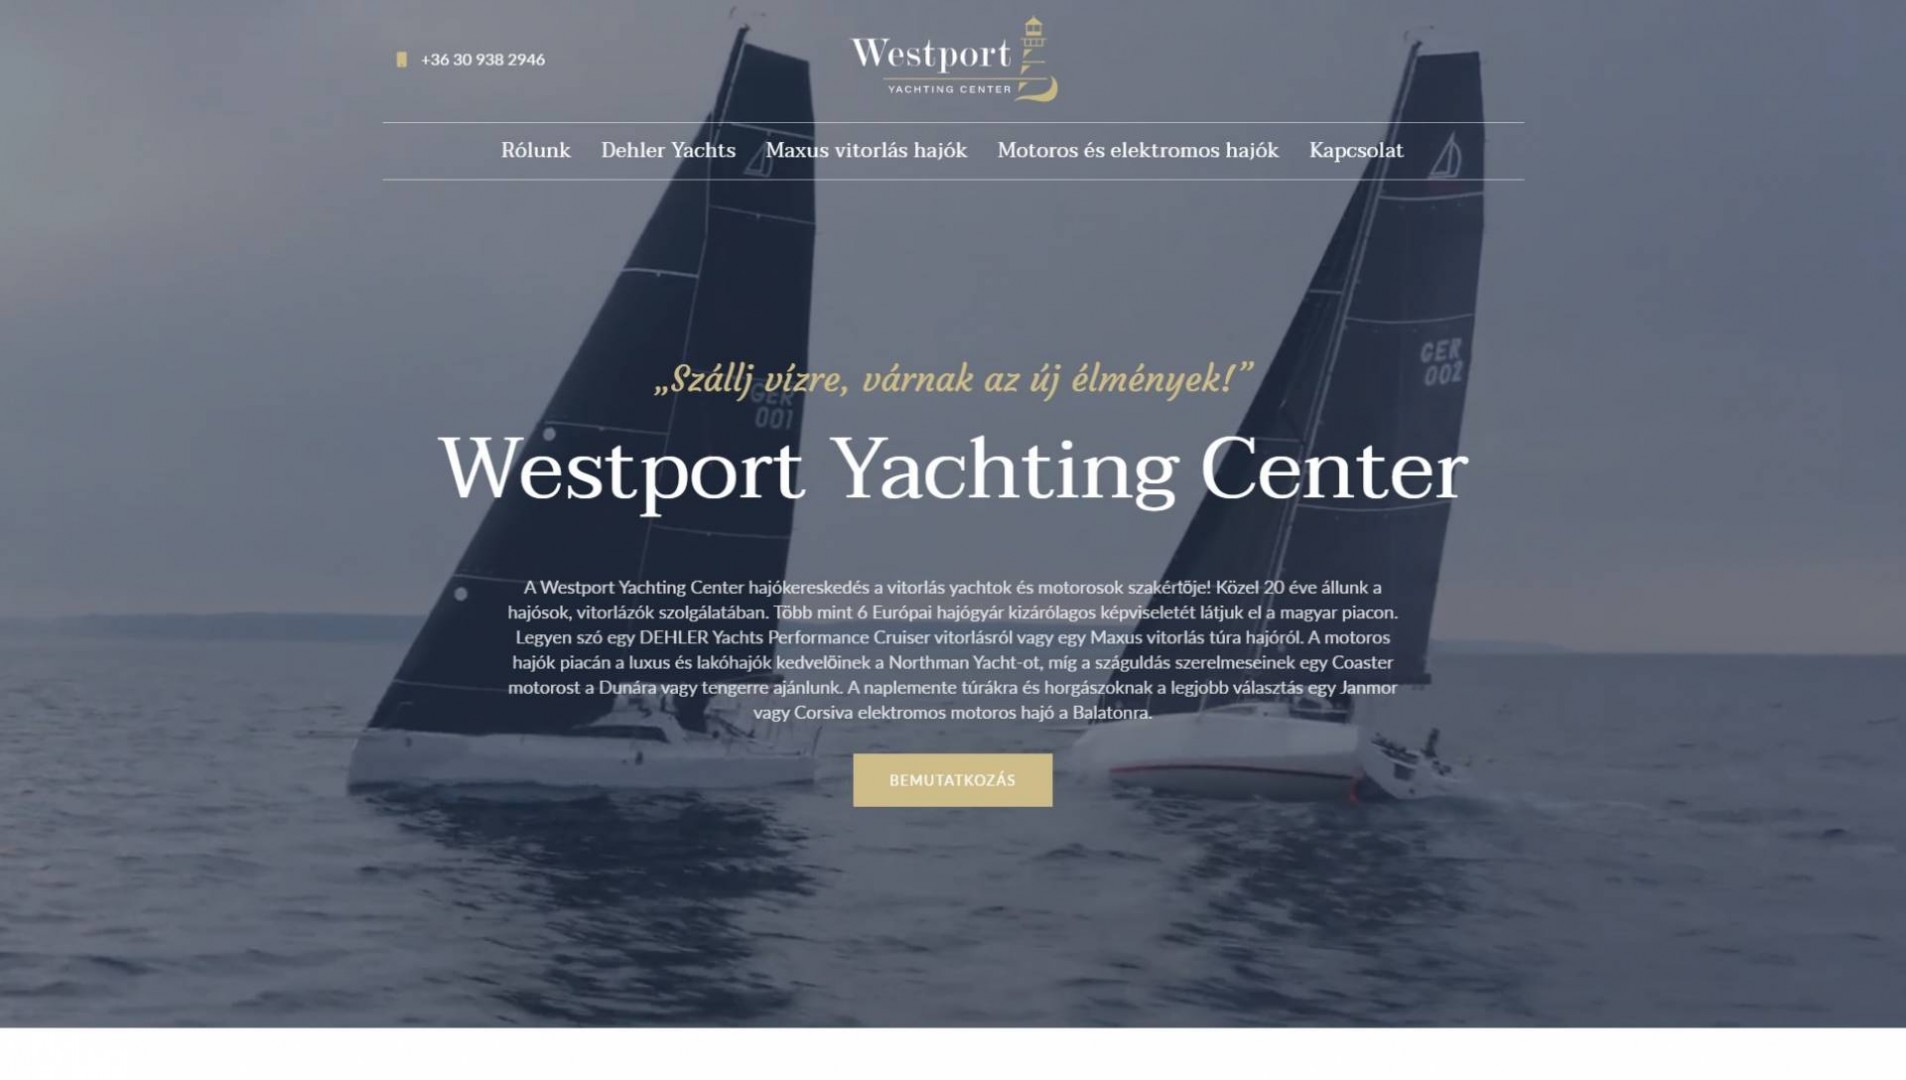 Westport - Yachtin Center